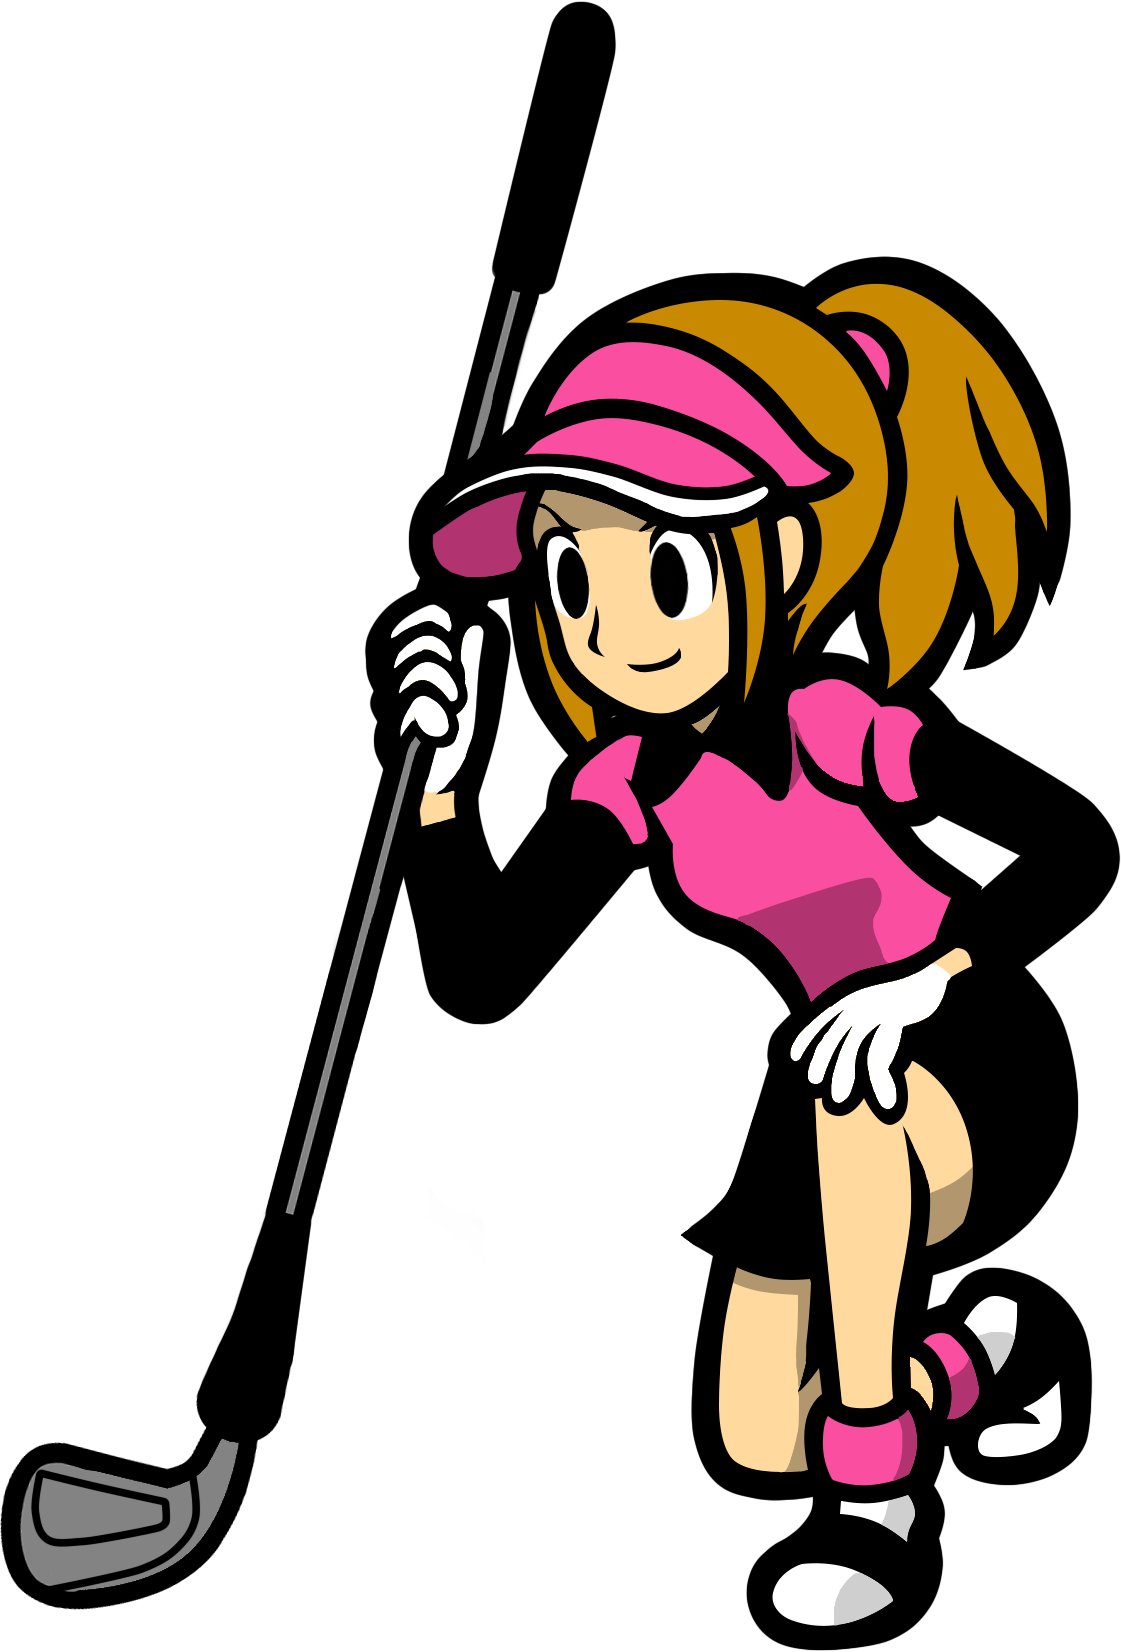 Image female golfer wii. Golfing clipart golf winner